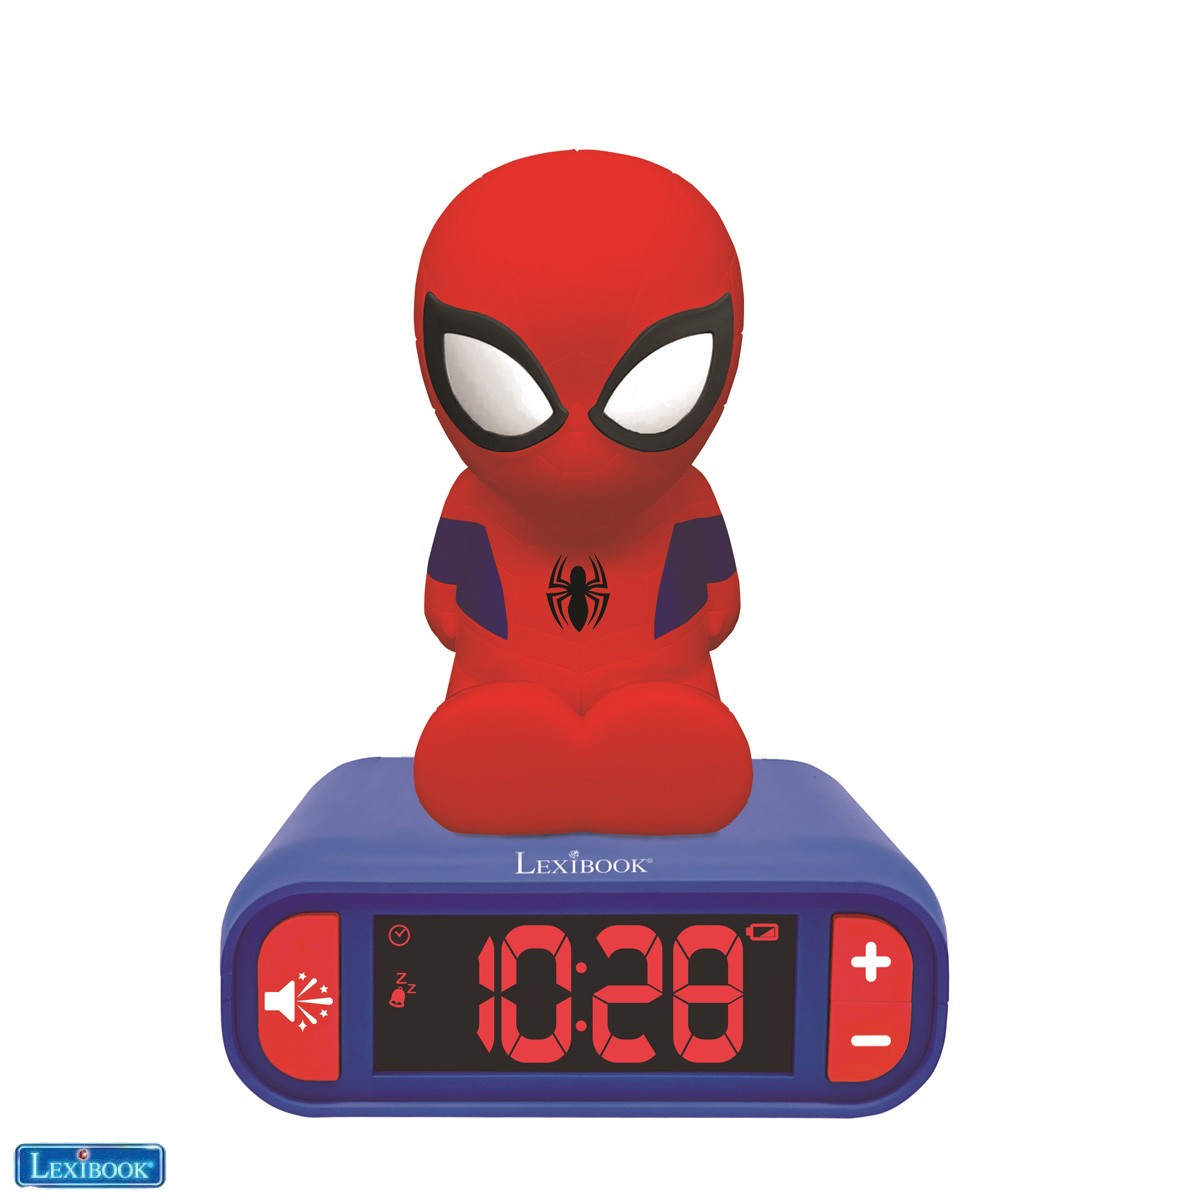 Spider-Man Nightlight Alarm Clock